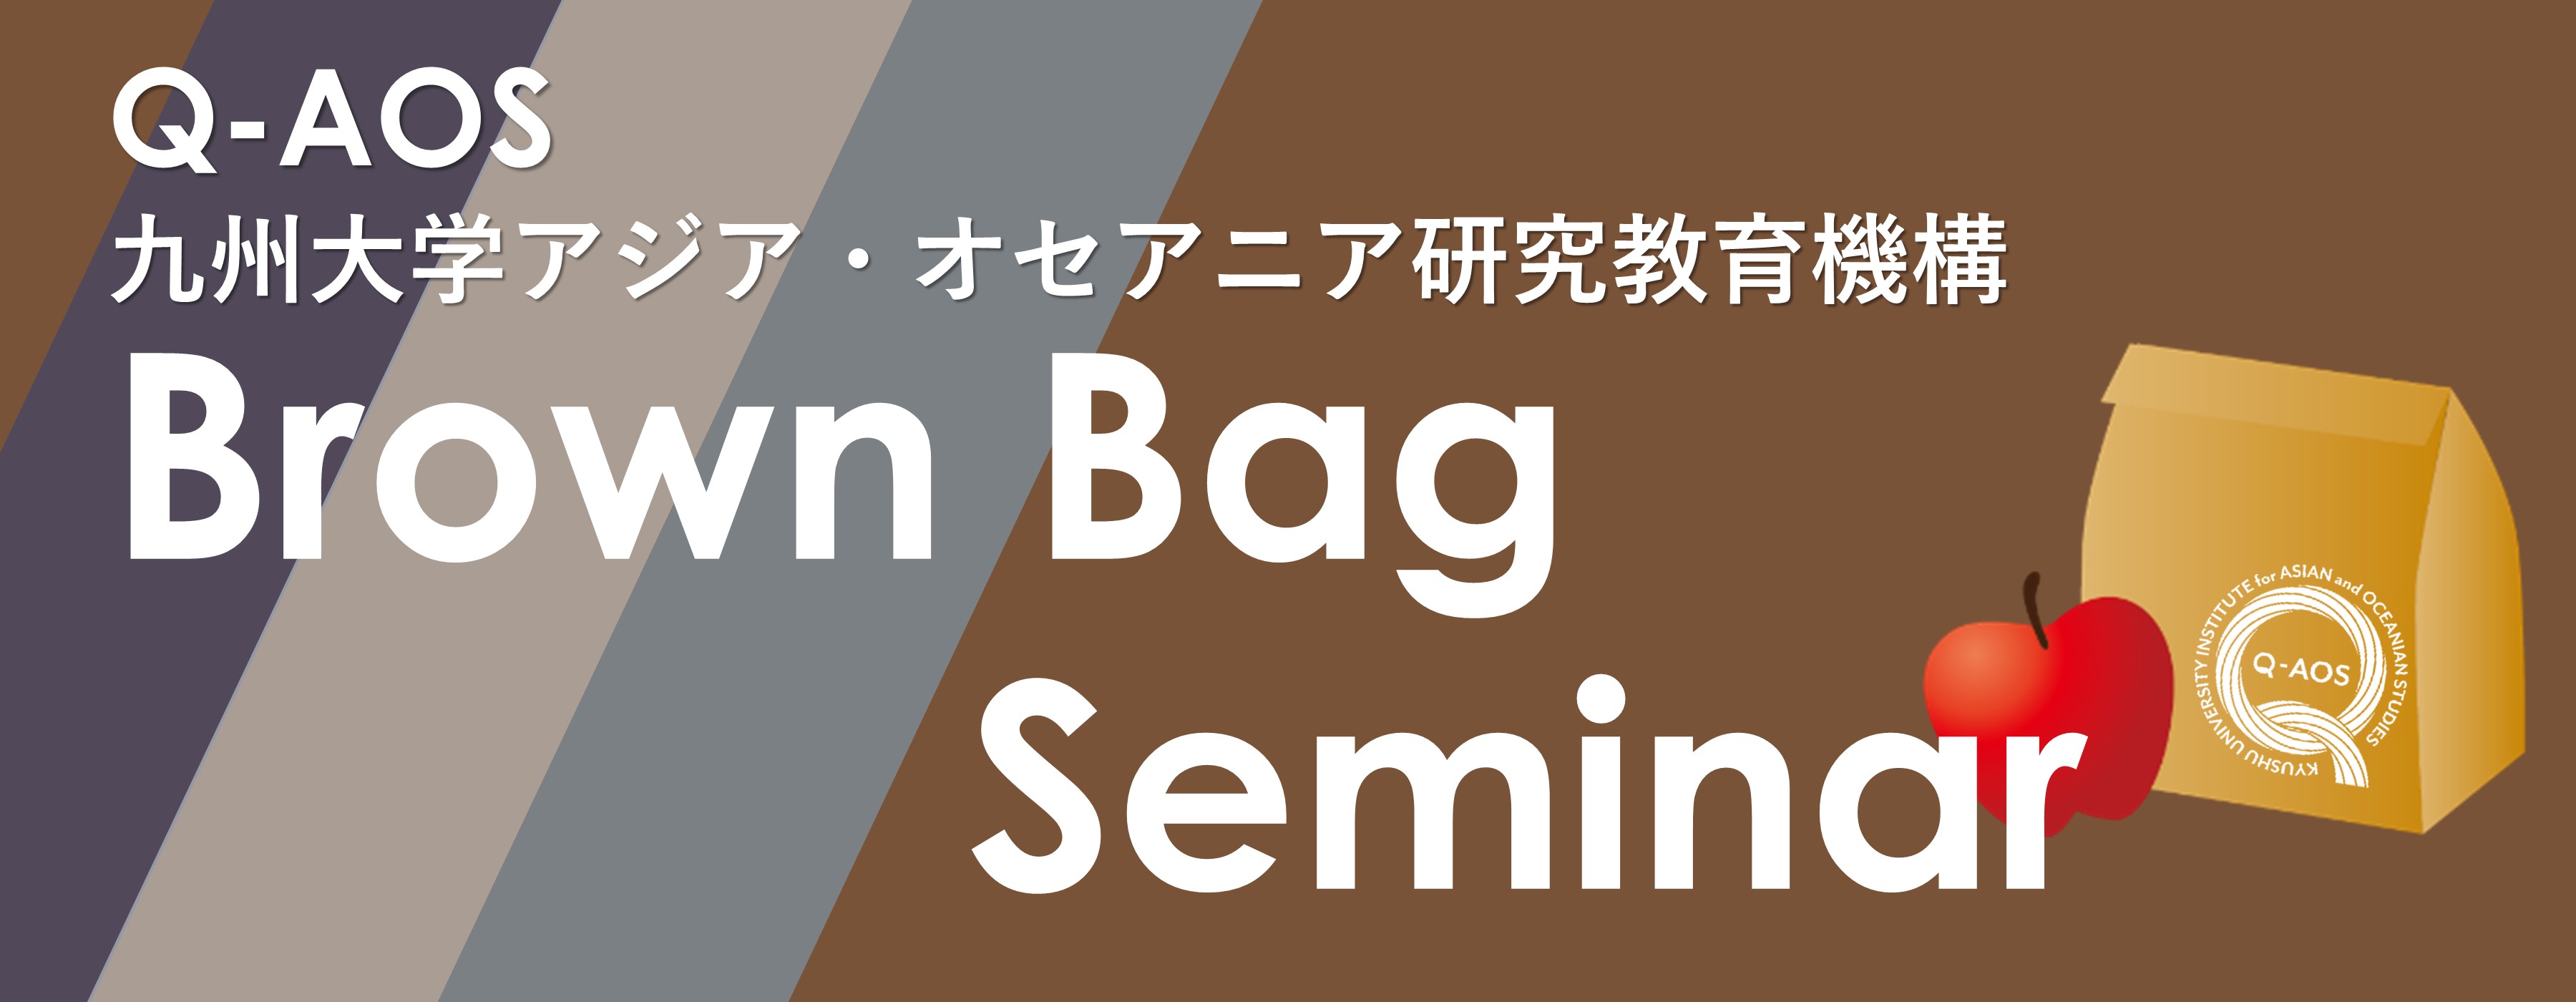 Brown Bag Seminar